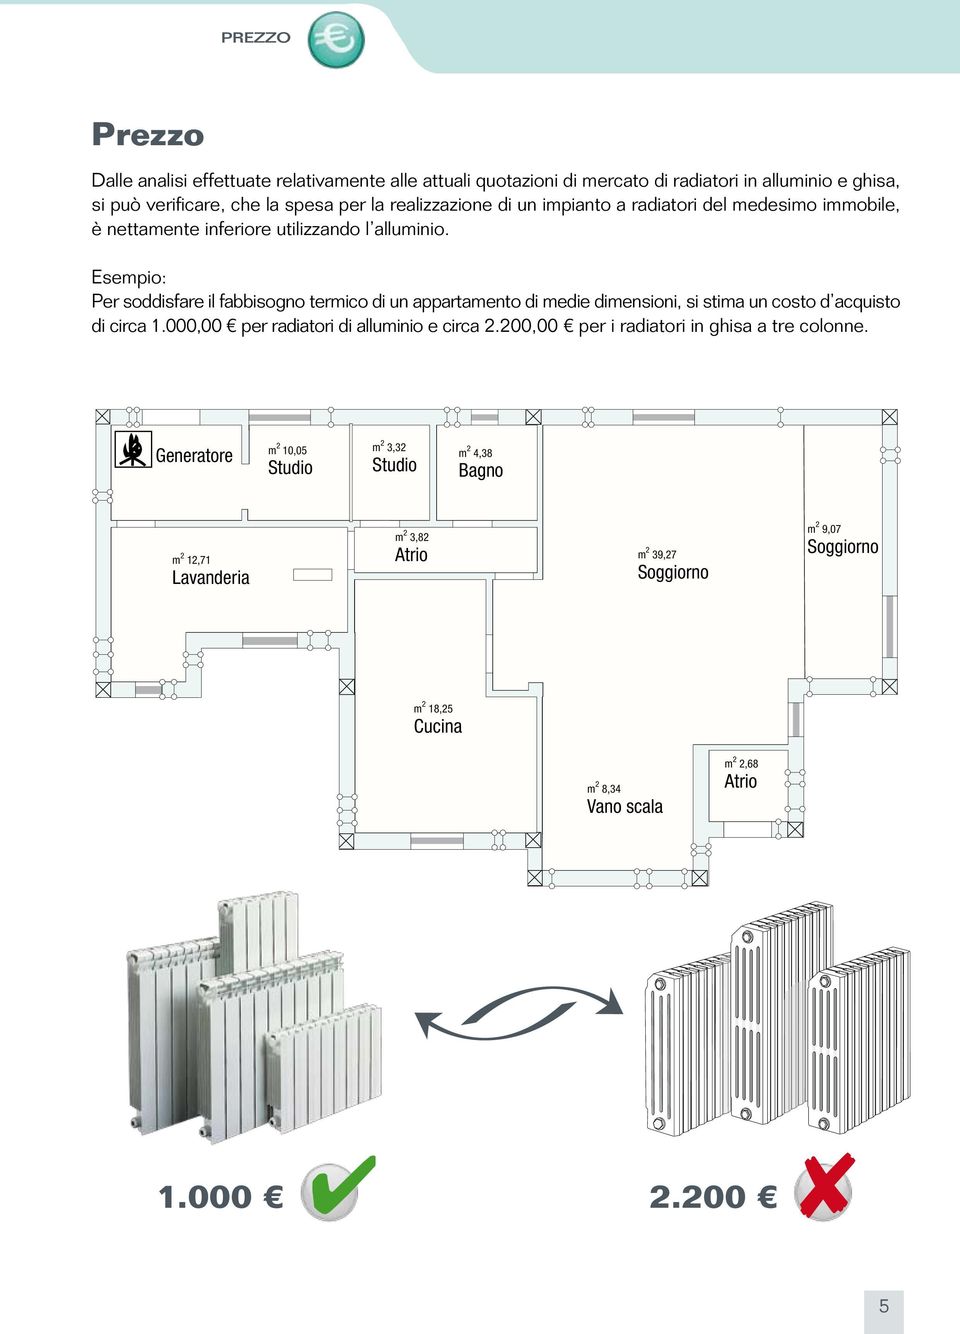 Esempio: Per soddisfare il fabbisogno termico di un appartamento di medie dimensioni, si stima un costo d acquisto di circa 1.000,00 per radiatori di alluminio e circa 2.